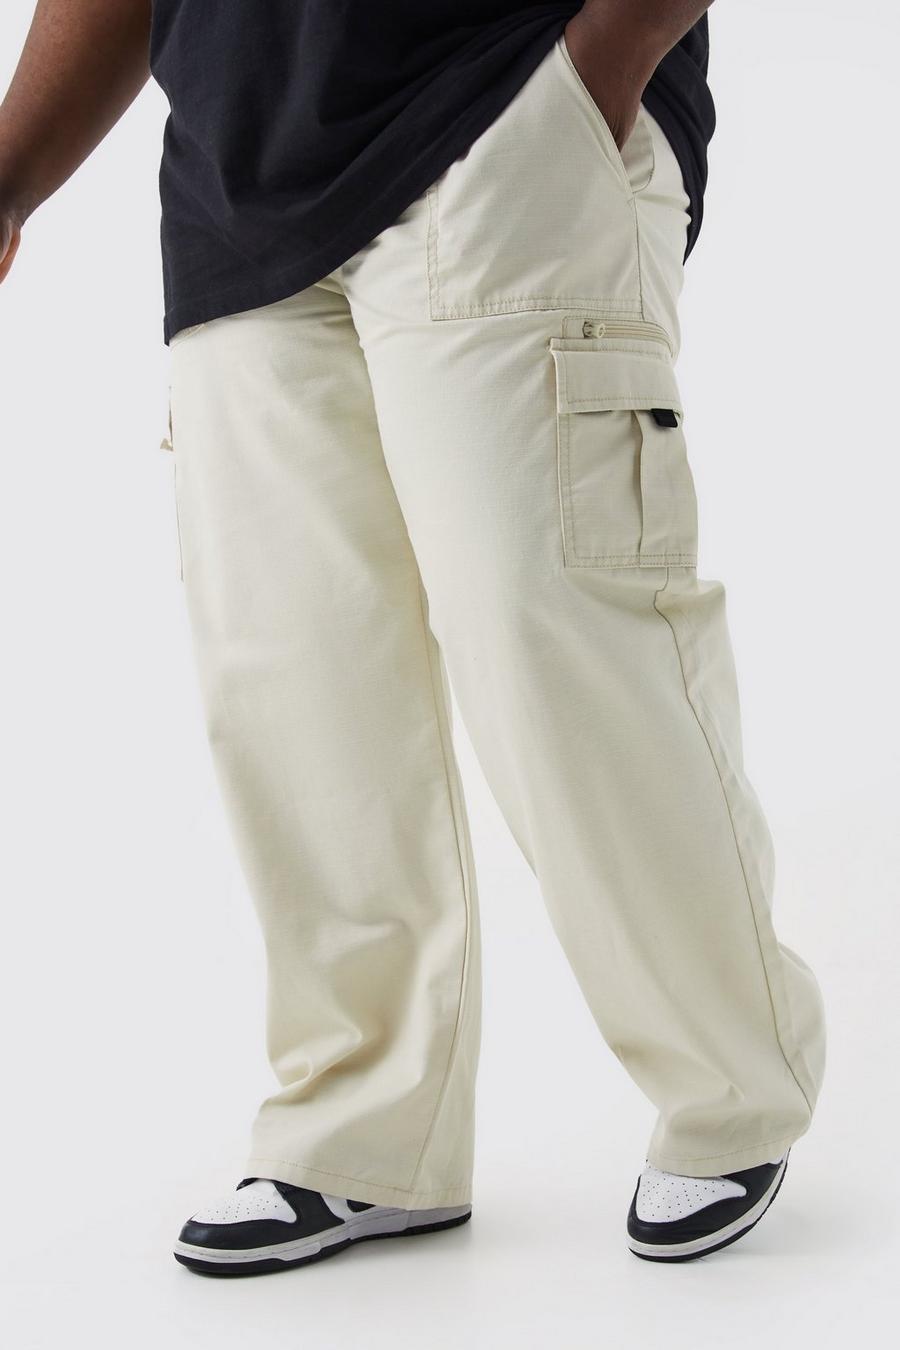 Pantalón Plus cargo elástico con cremallera y costuras antidesgarros, Stone